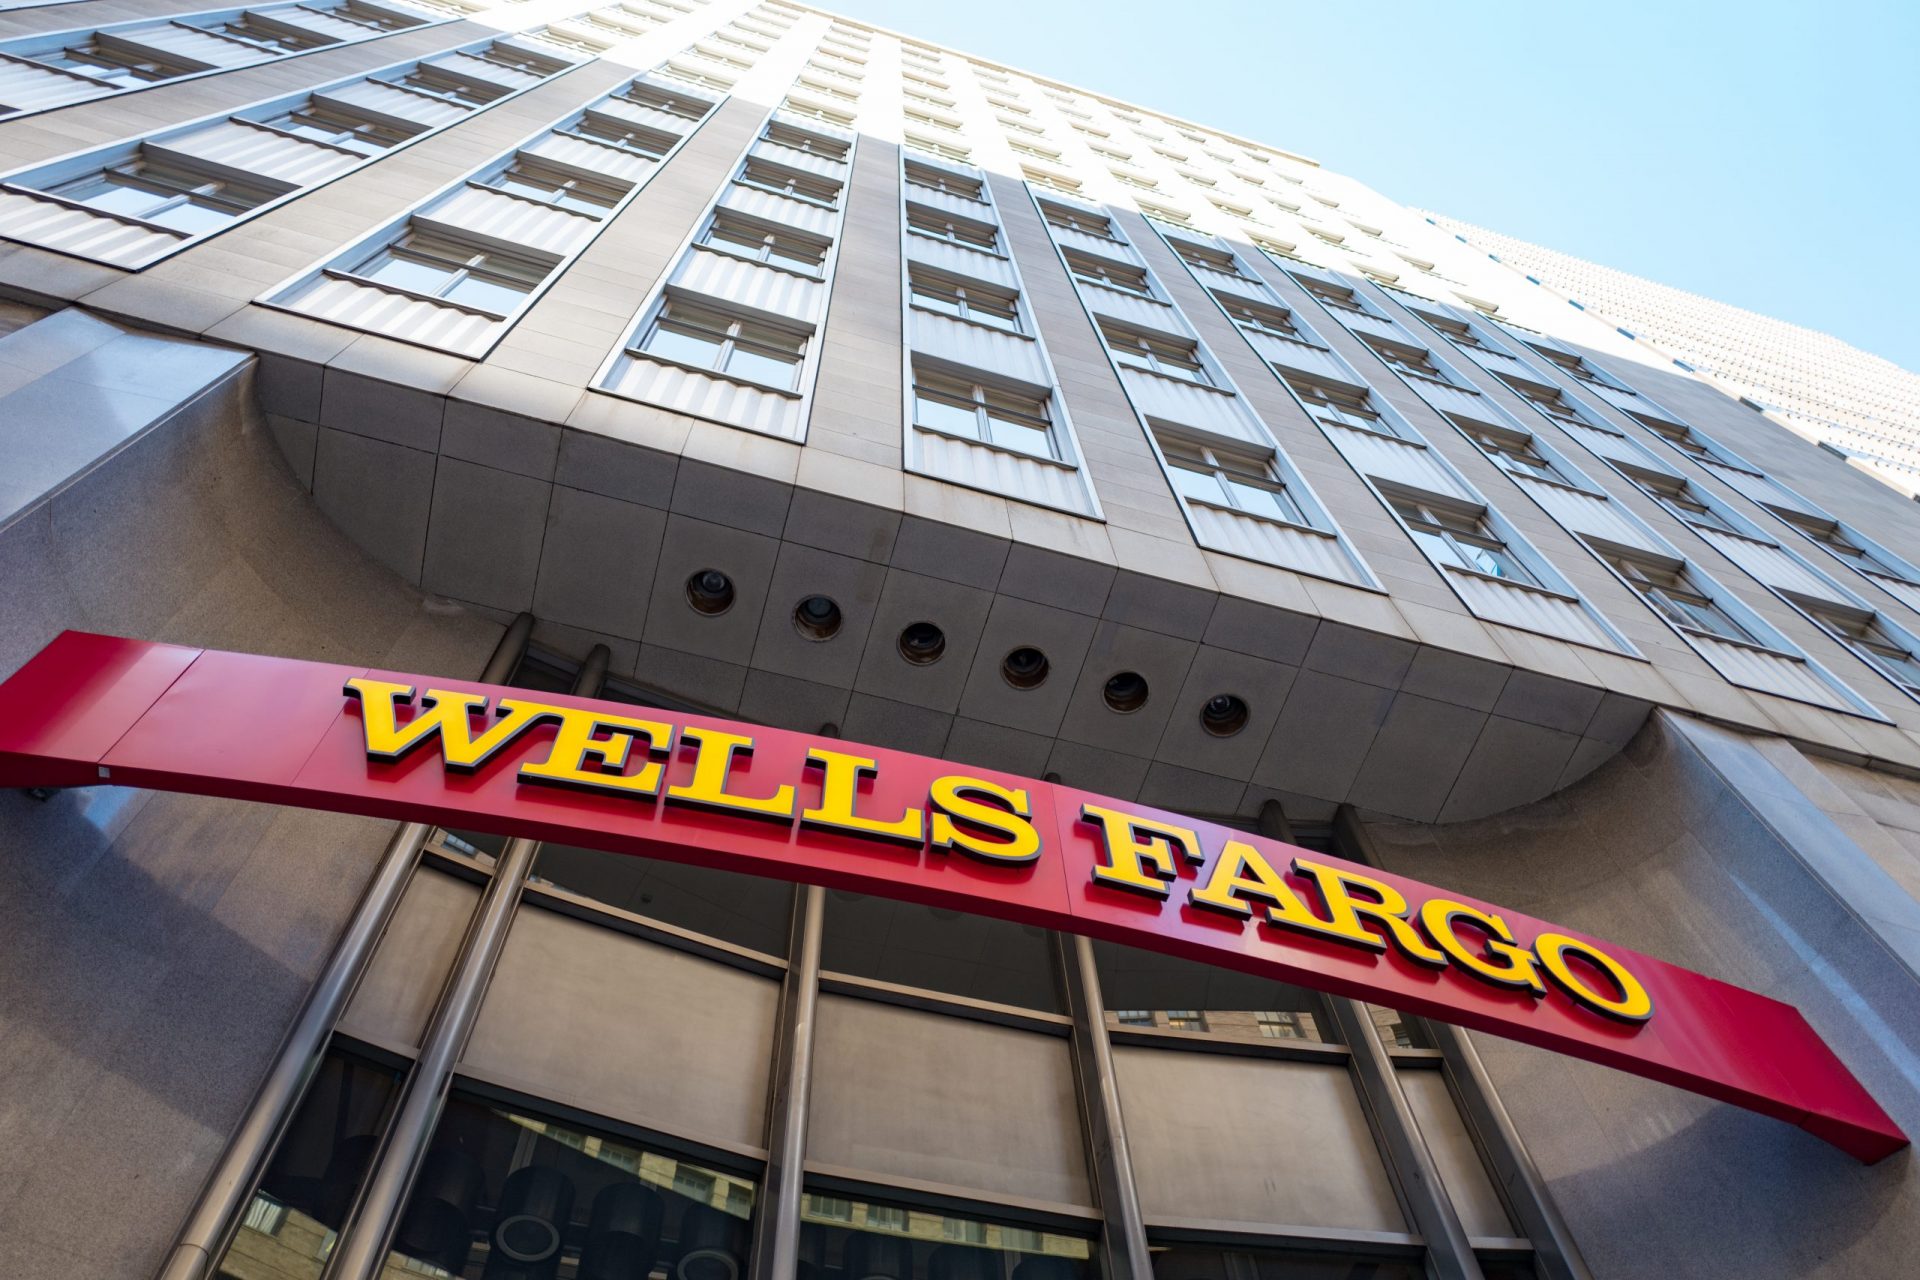 Wells Fargo froze her bank account